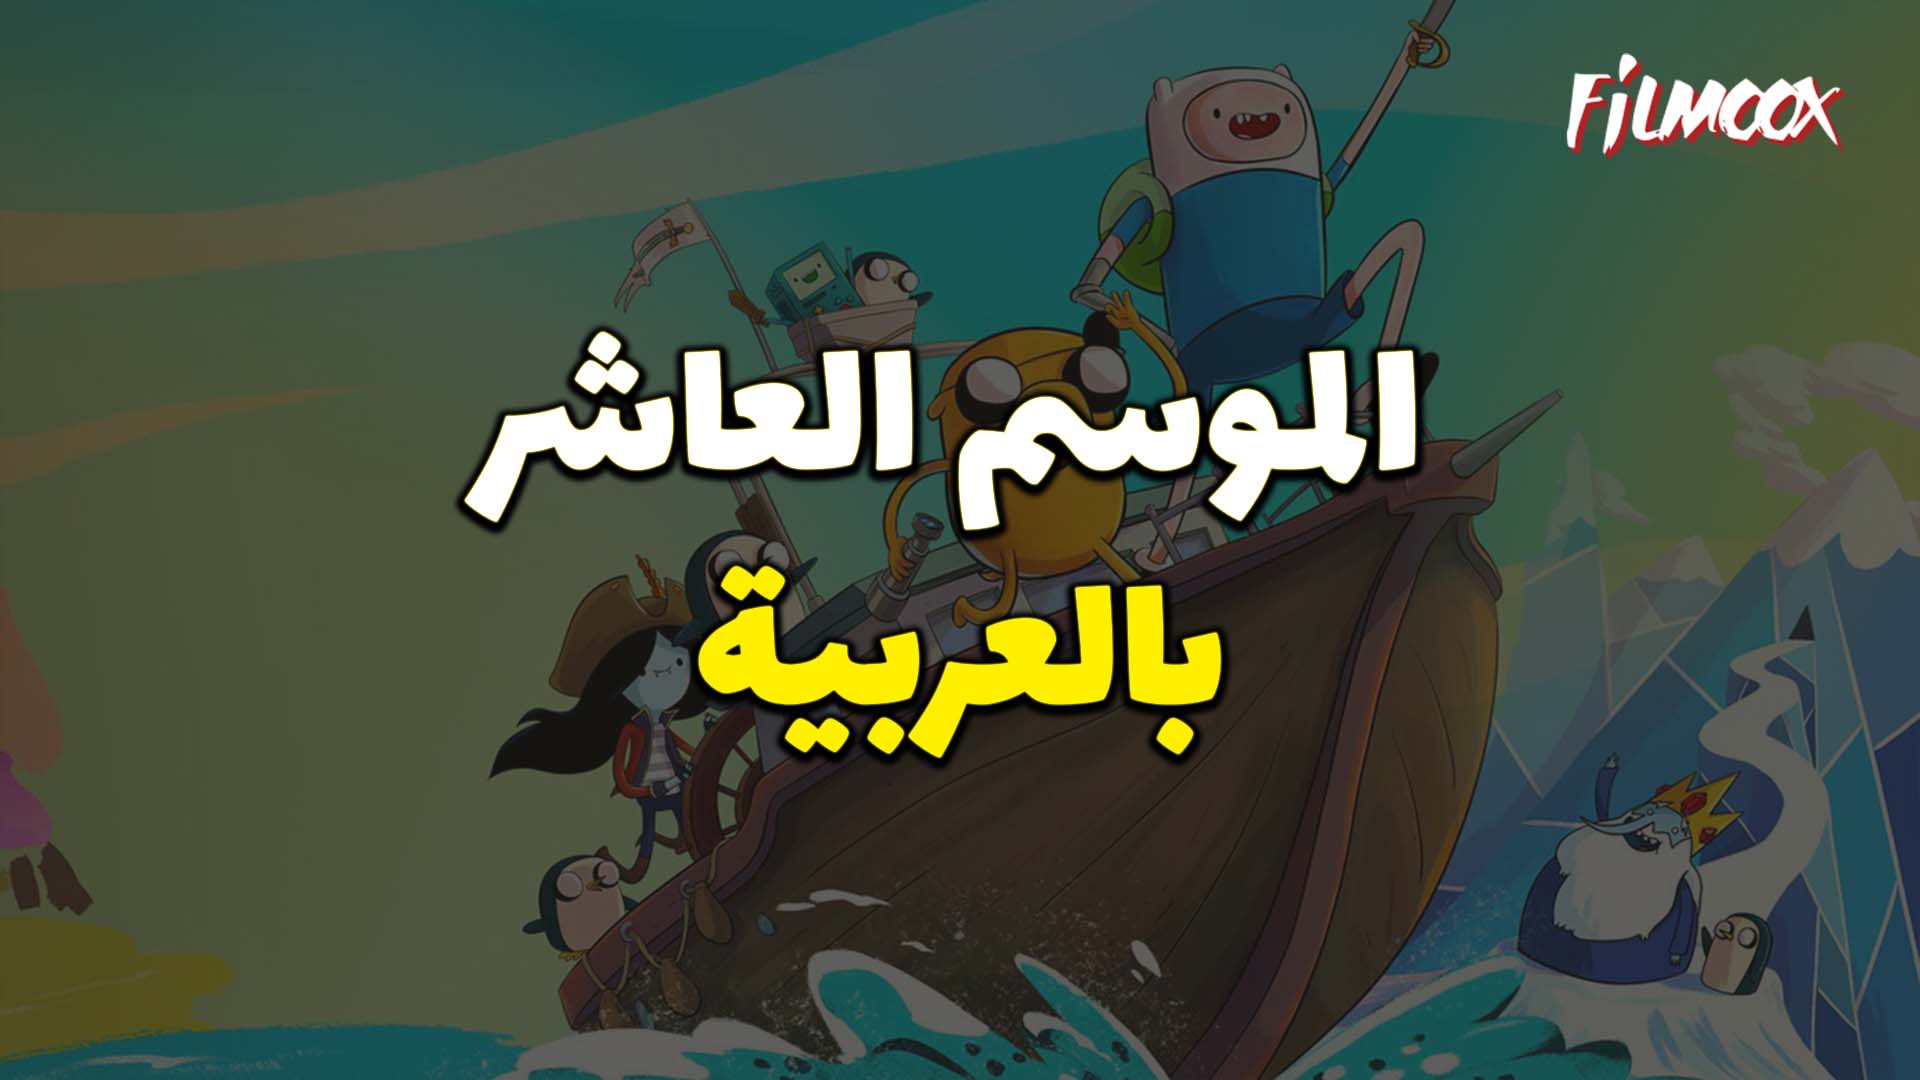 وقت المغامرة الموسم العاشر بالعربية